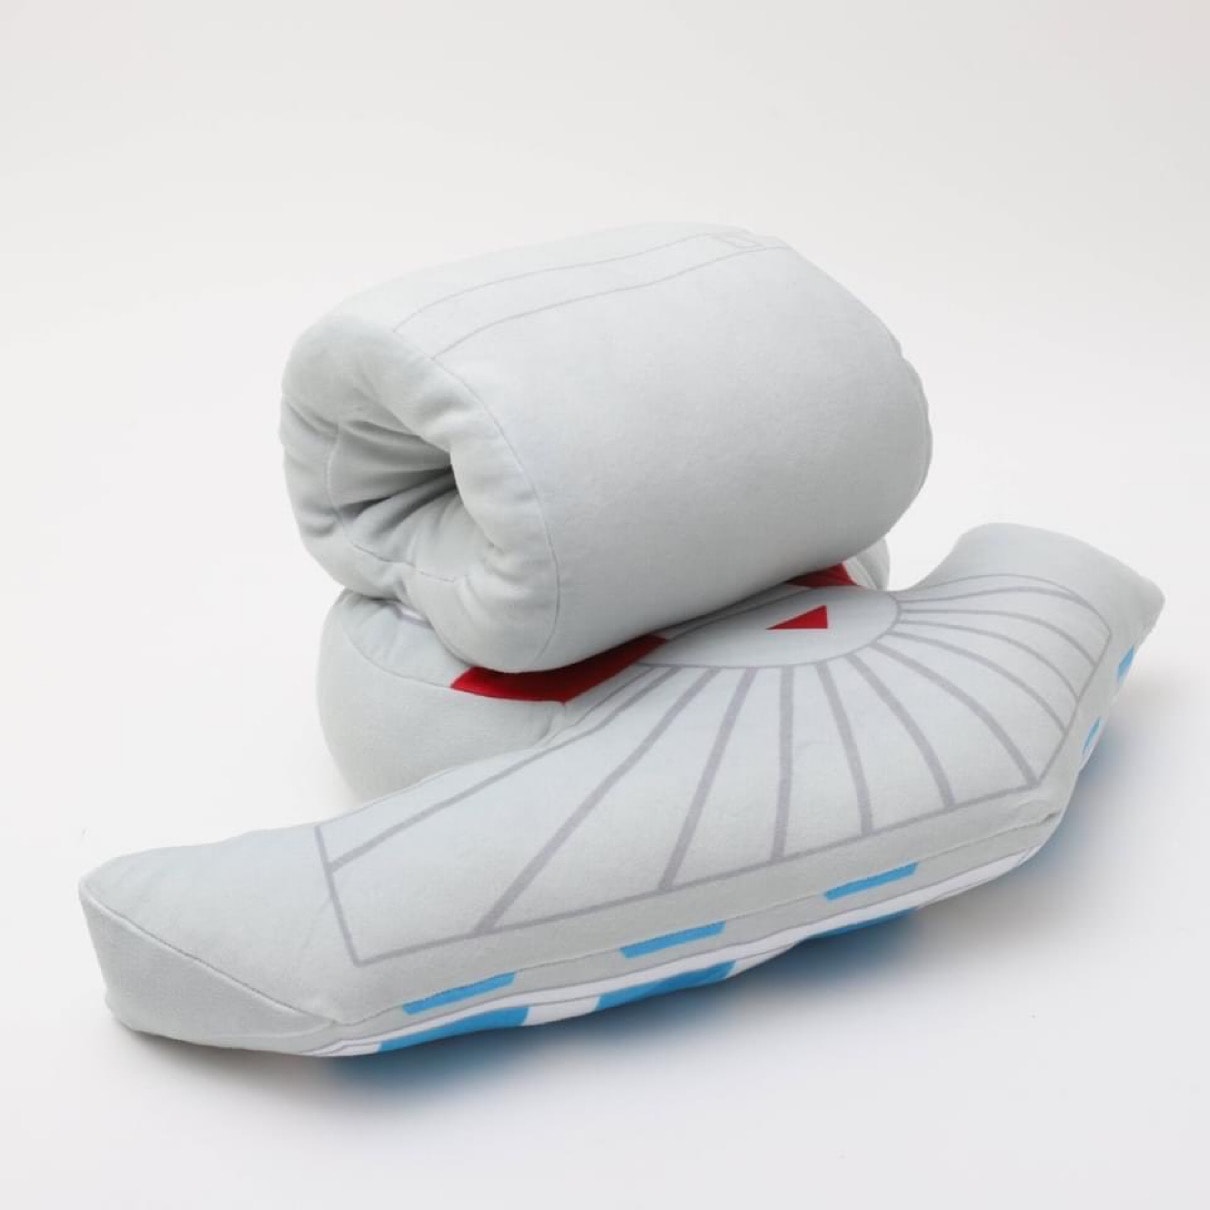 官方推出《遊戲王 Yu-Gi-Oh!》全新「決鬥盤」造型頭枕